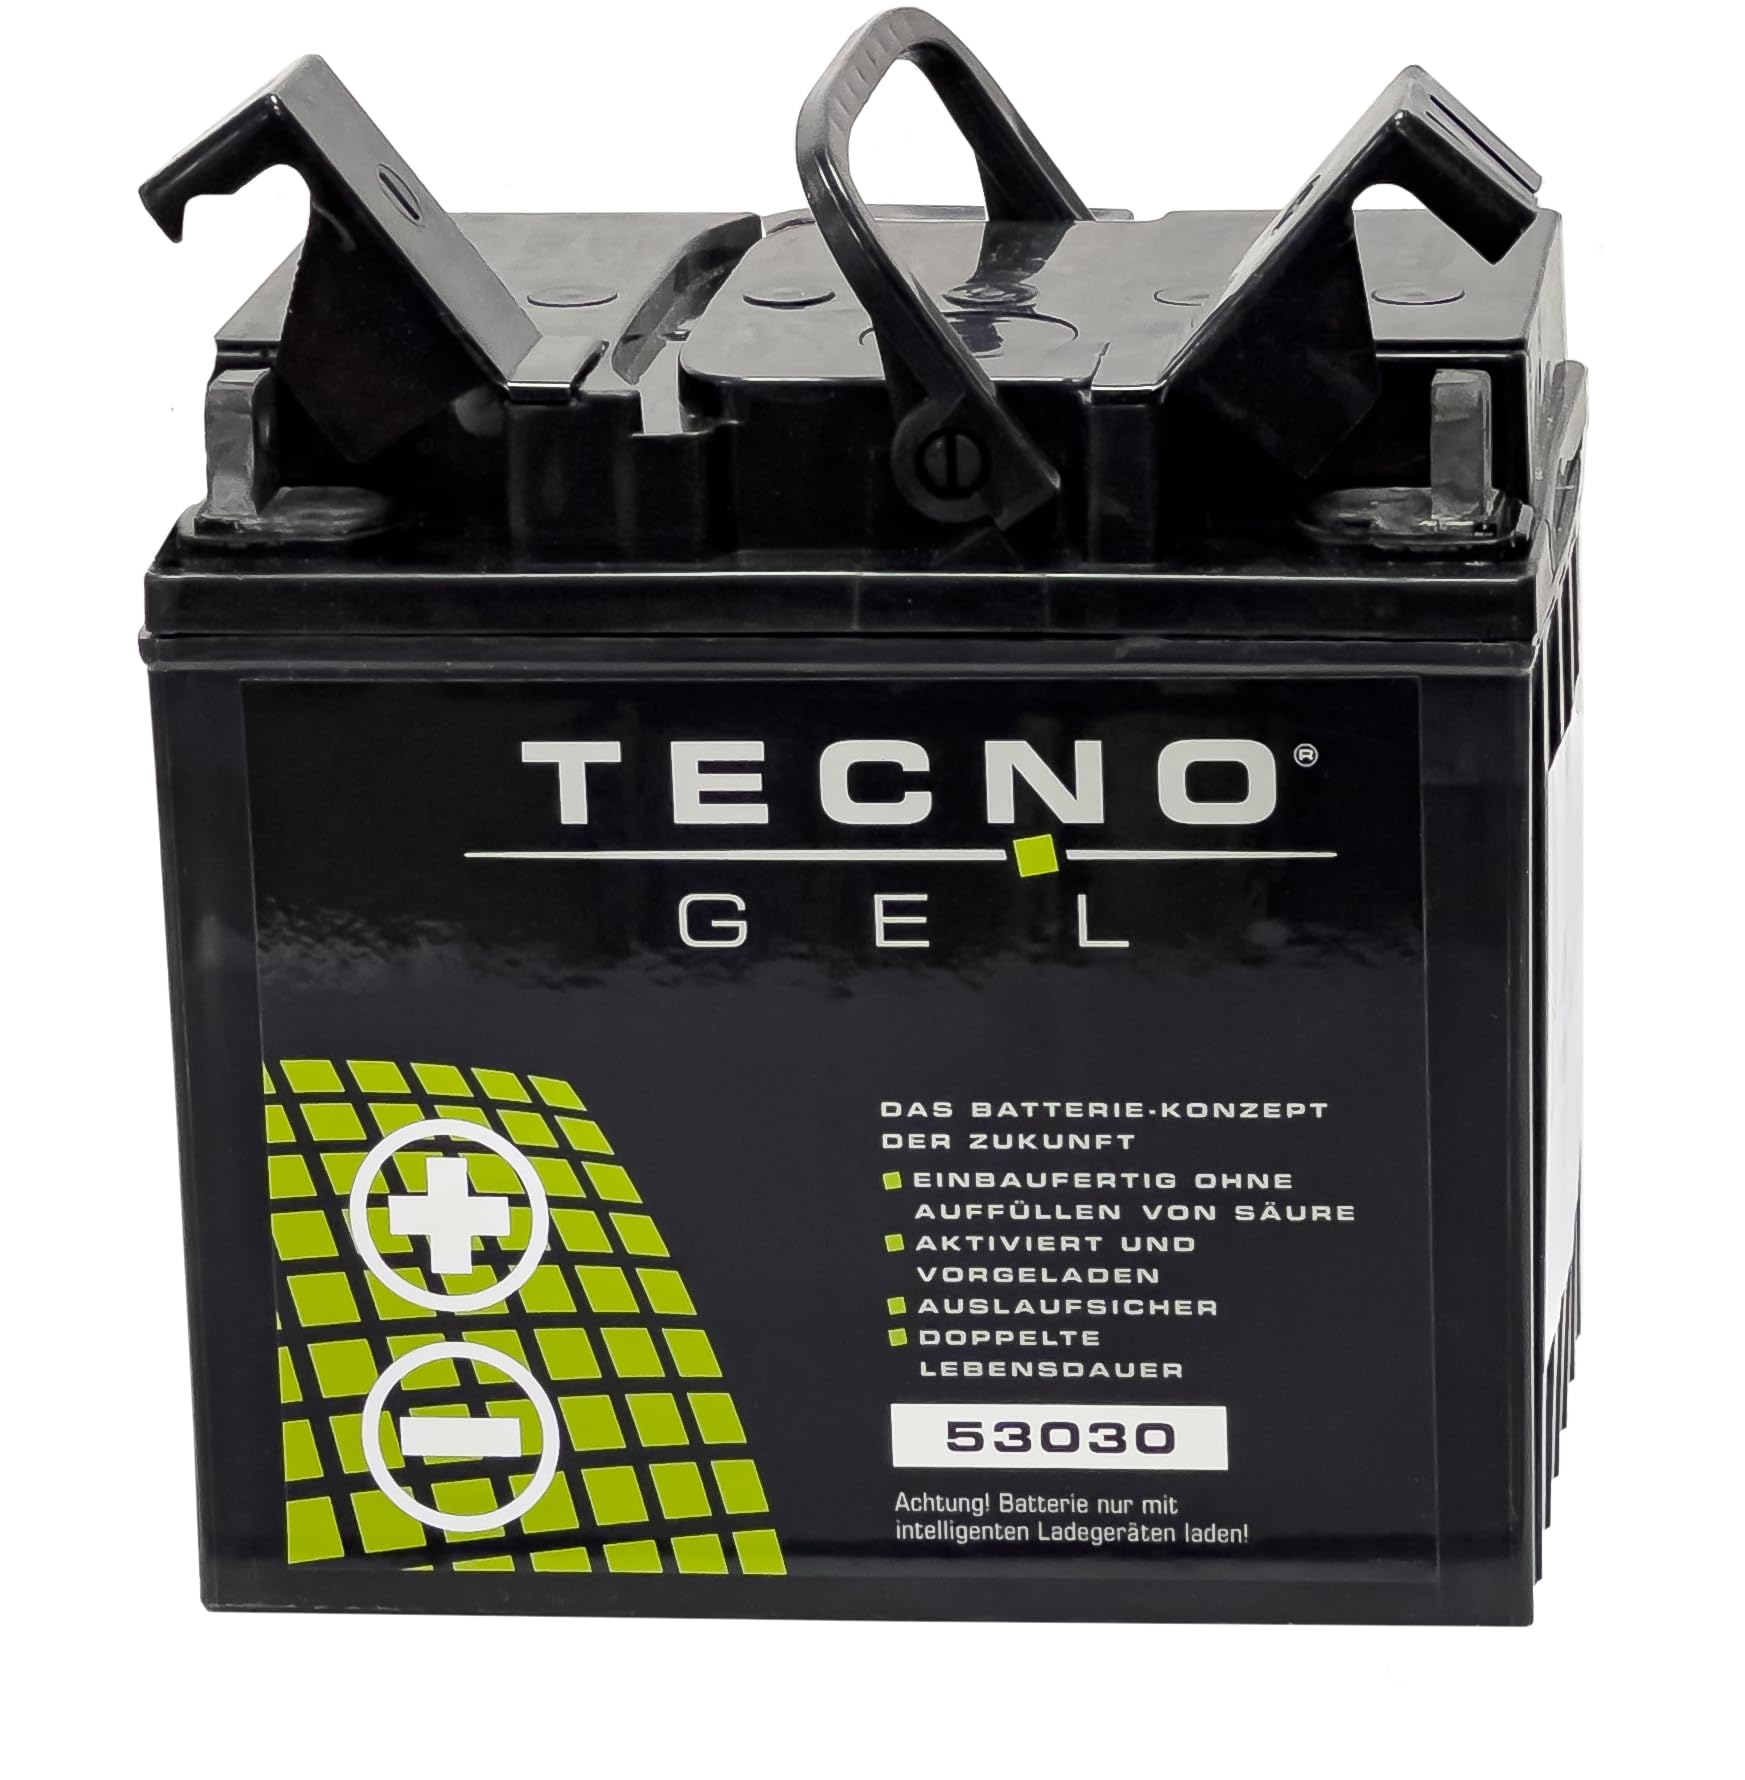 TECNO-GEL Motorrad Qualitäts Batterie 53030 für BMW K 75, 2, C, S, RT m/o ABS 1984-1996, 12V Gel-Batterie 30Ah, 187x130x170 mm von Wirth-Federn